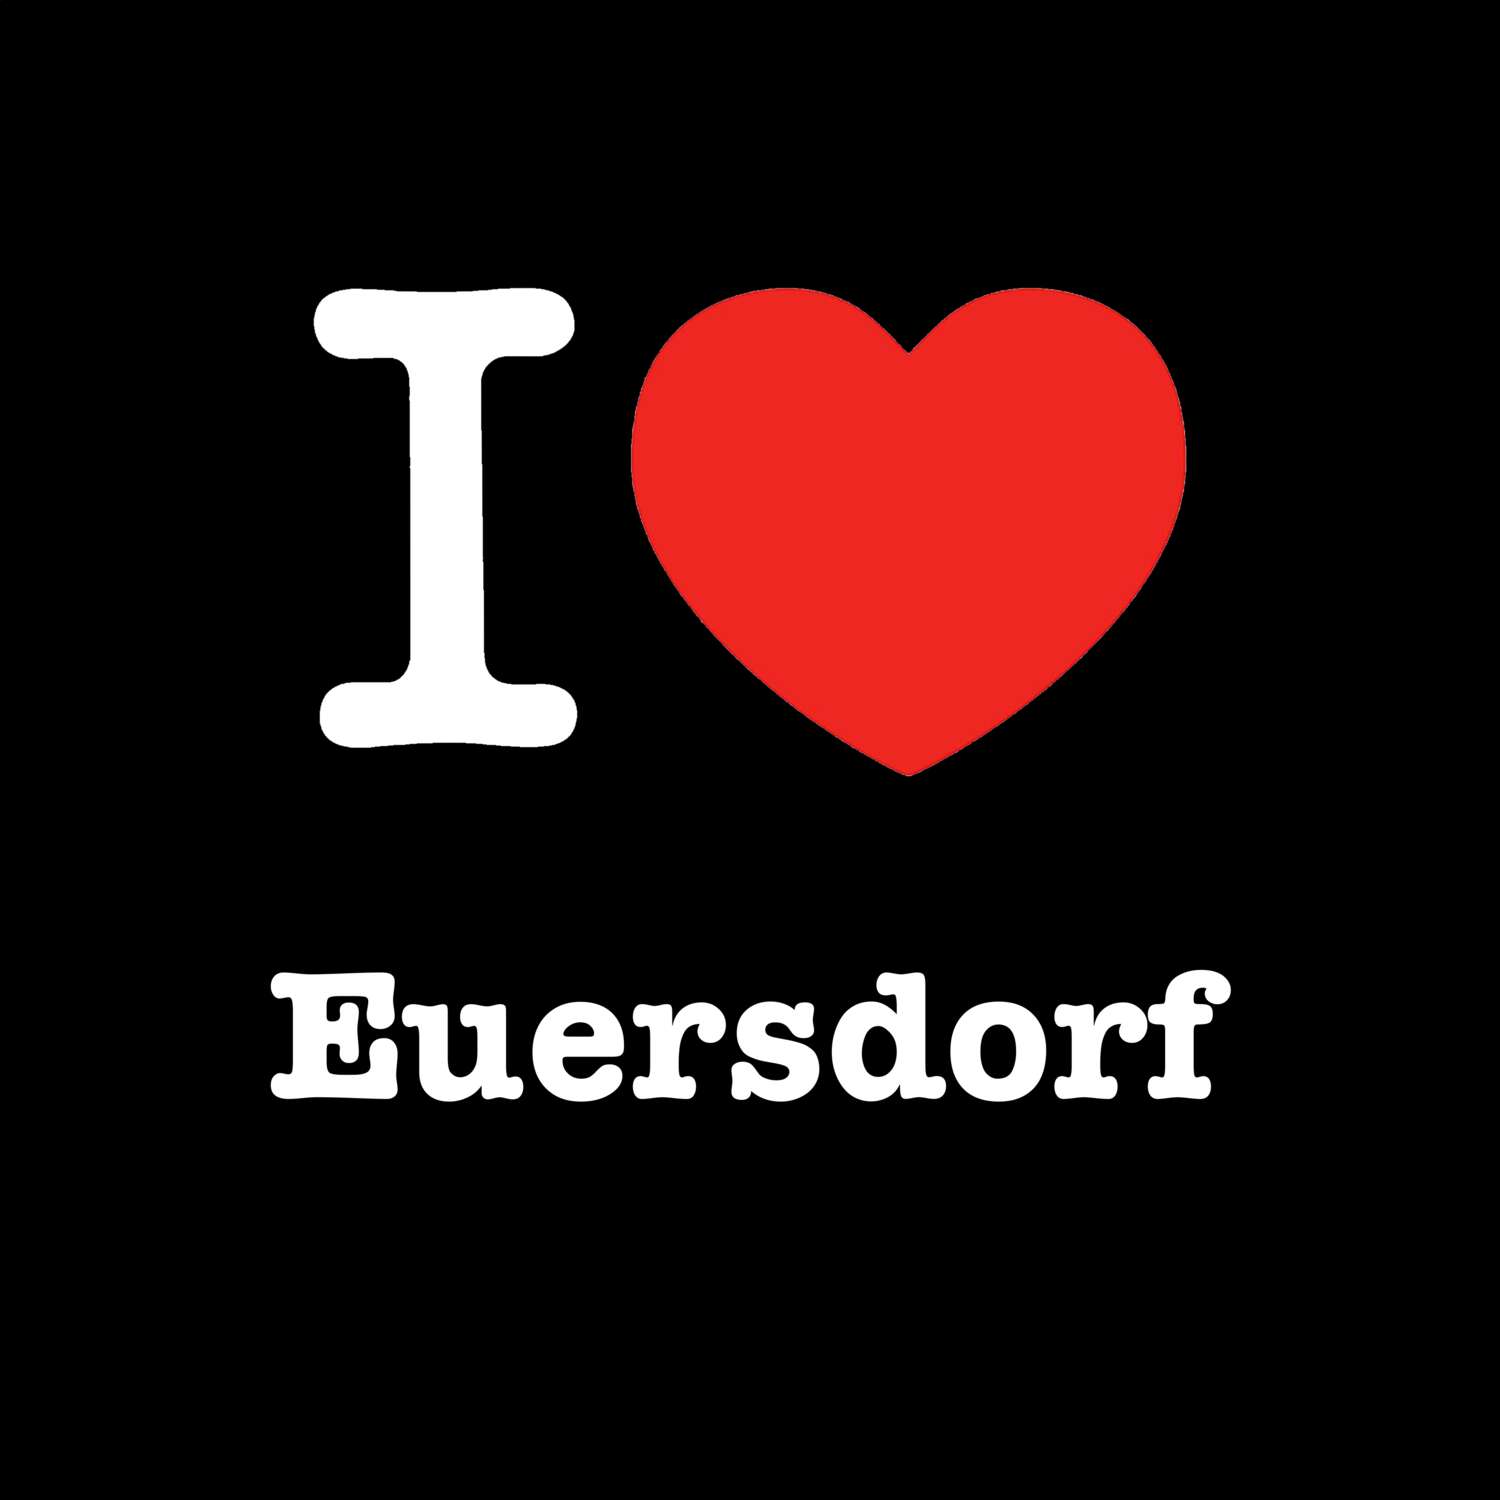 Euersdorf T-Shirt »I love«